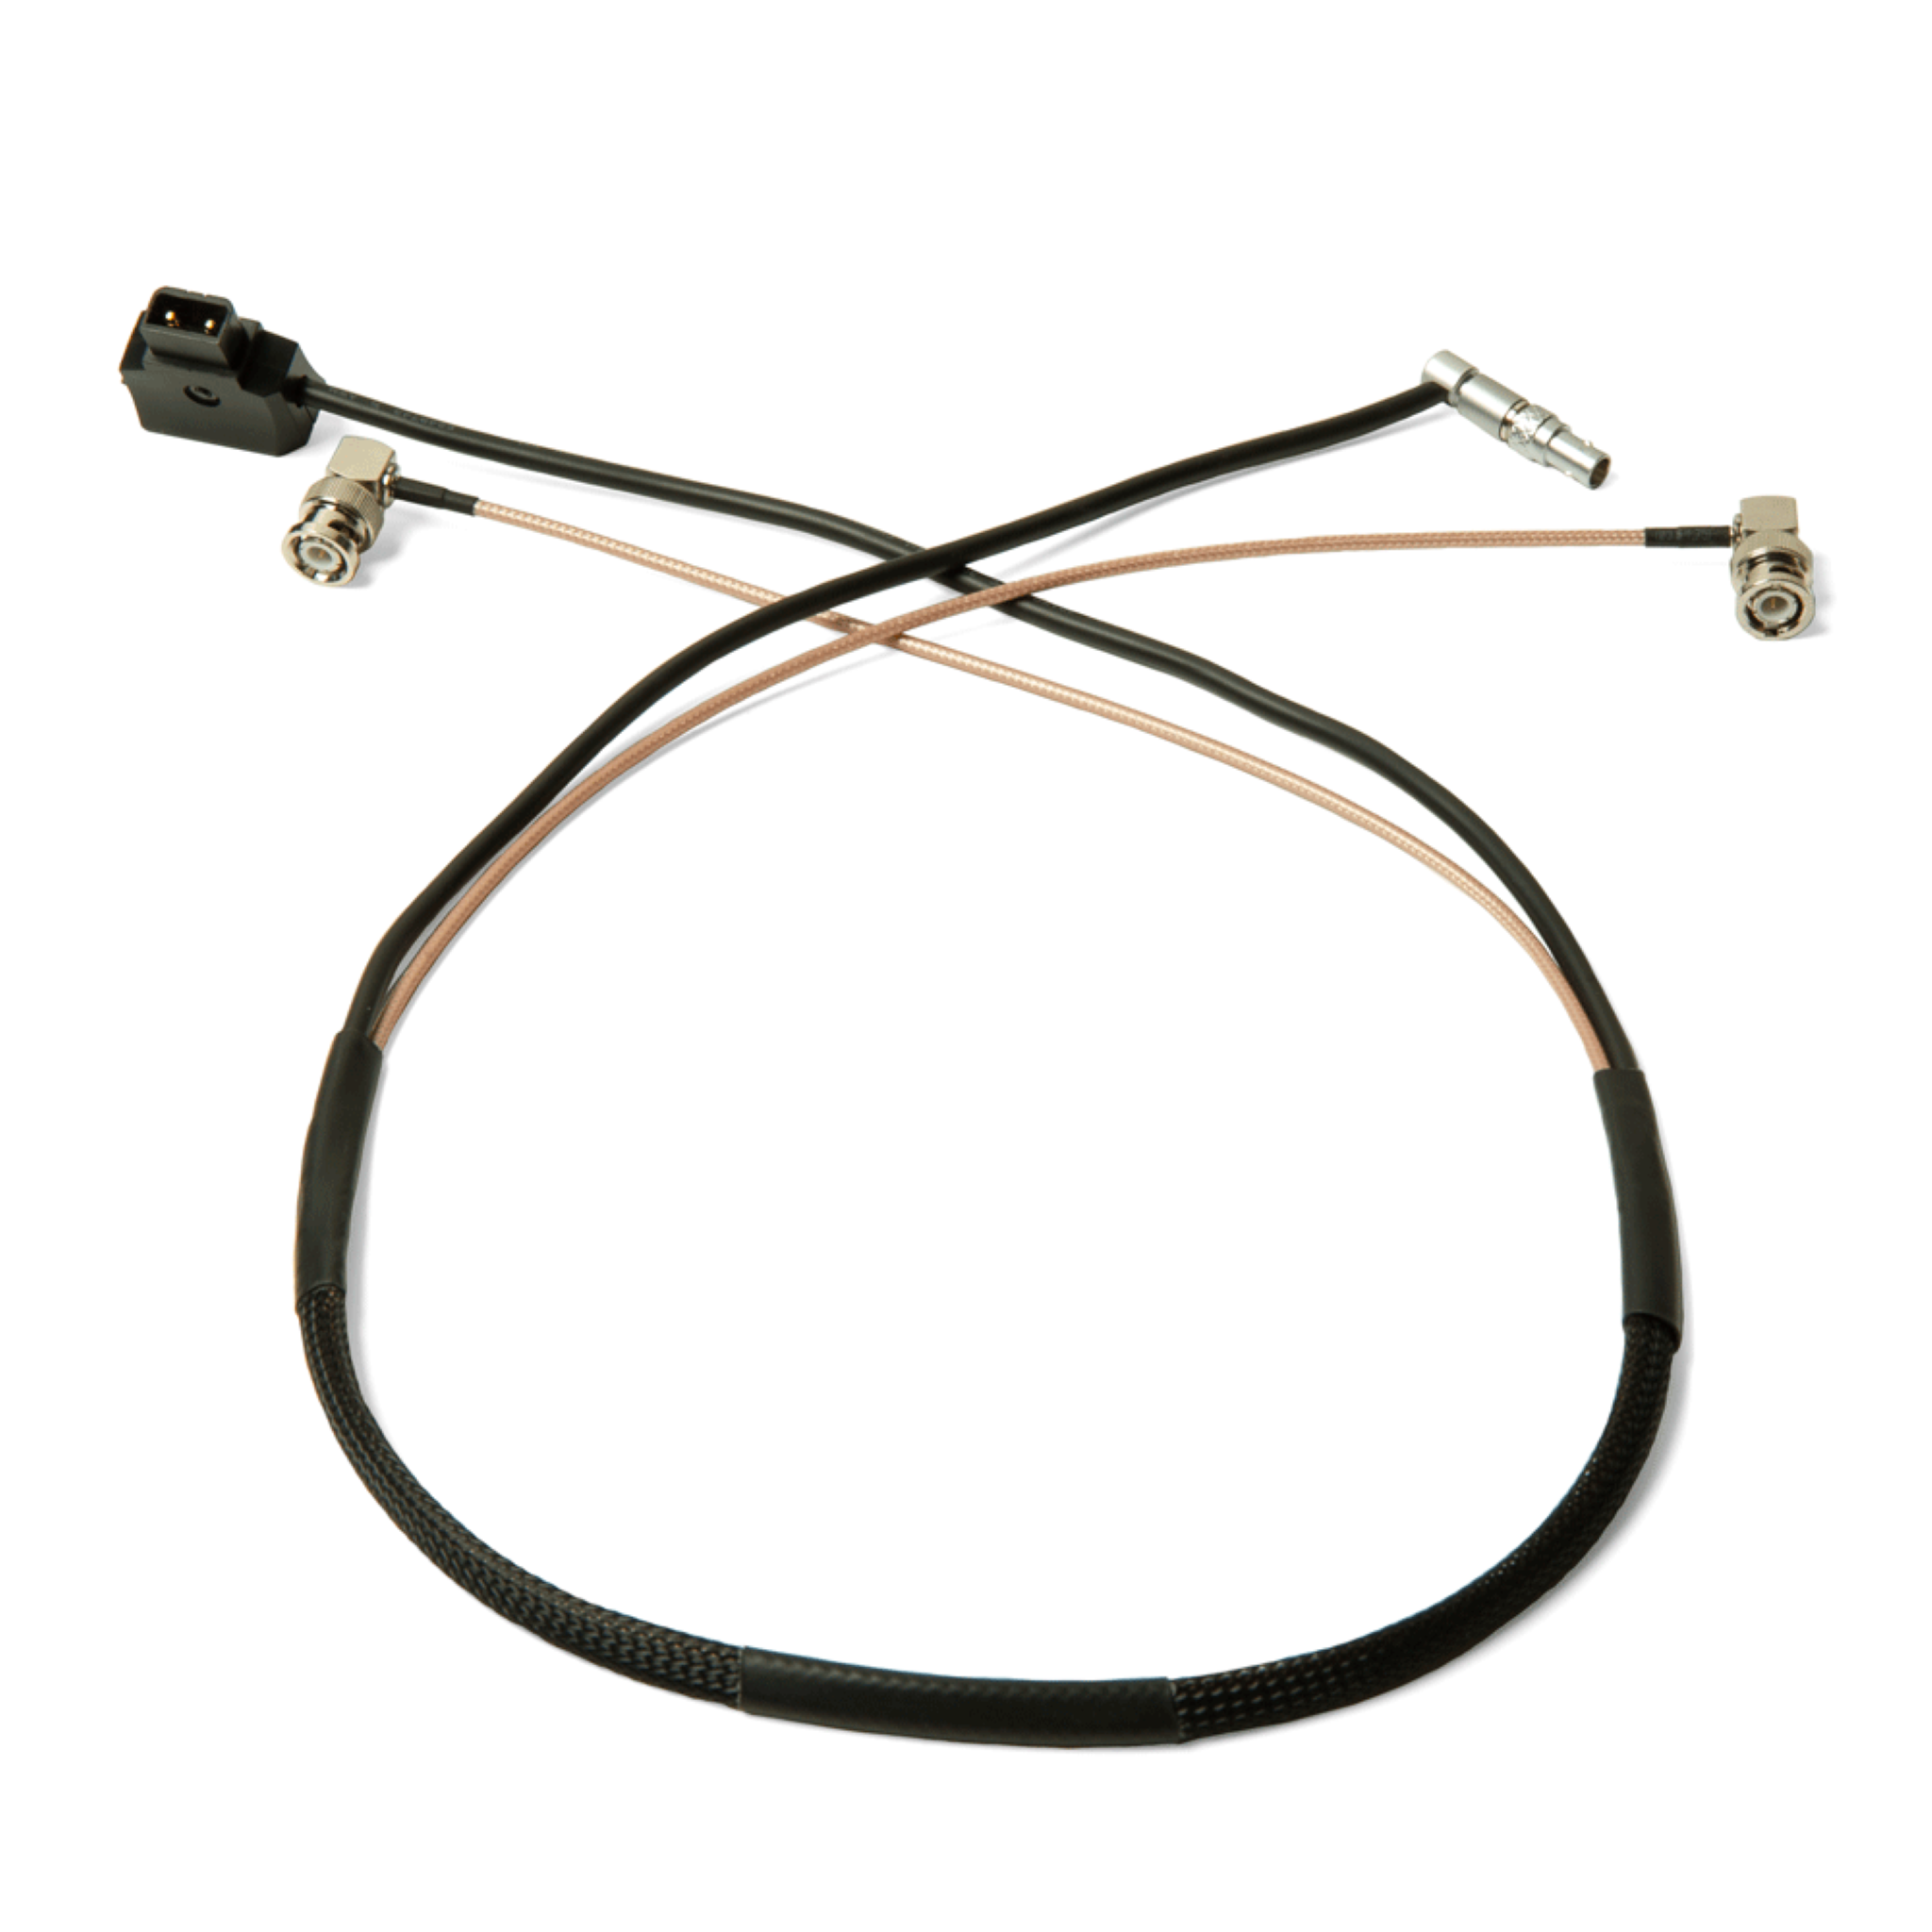 Cable de alimentación y vídeo SDI compatible con Lemo de 4 pines con interruptor de alimentación